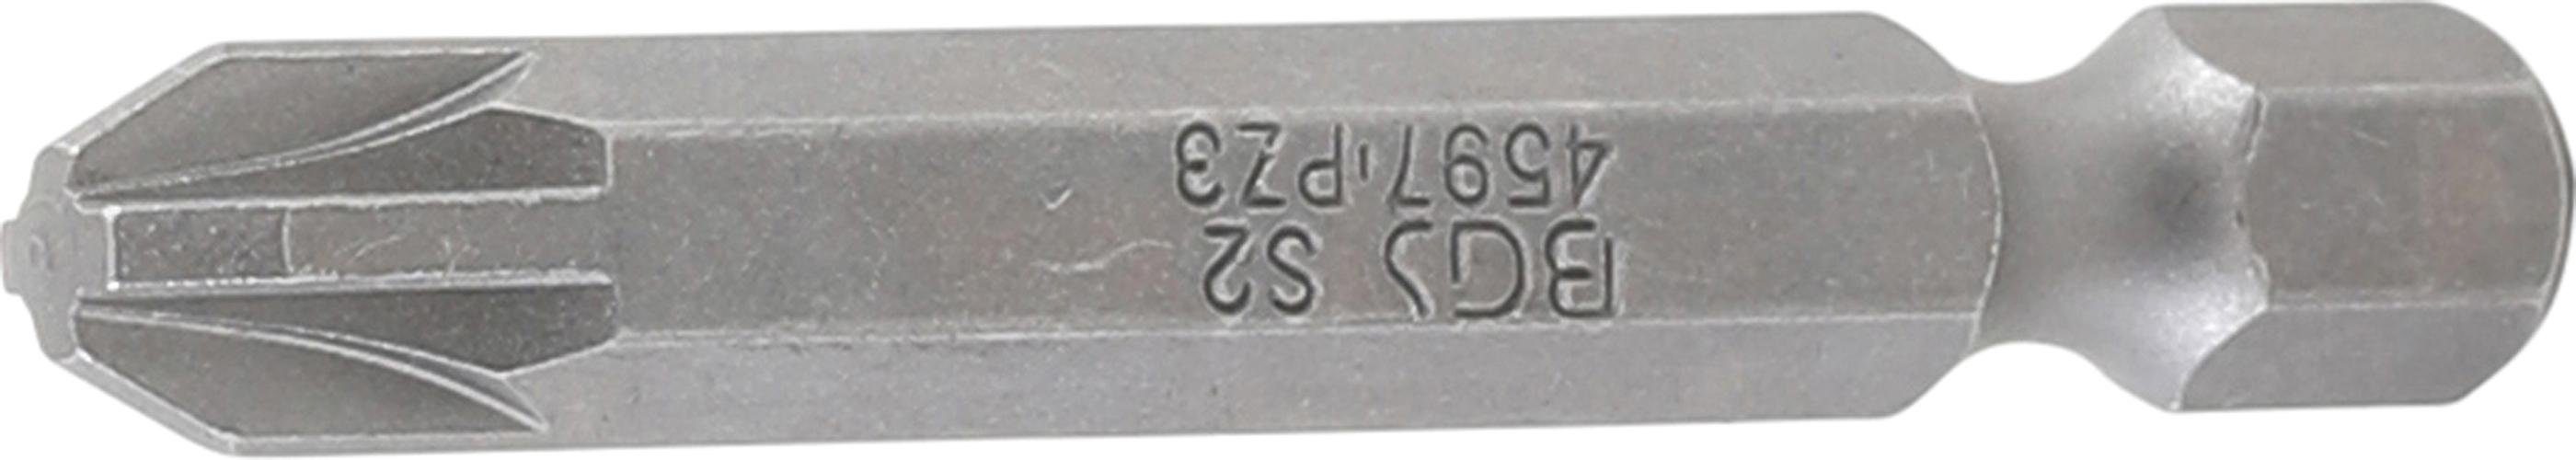 50 6,3 BGS Länge Kreuzschlitz (1/4), Außensechskant Antrieb mm, PZ3 Bit, Bit-Schraubendreher mm technic